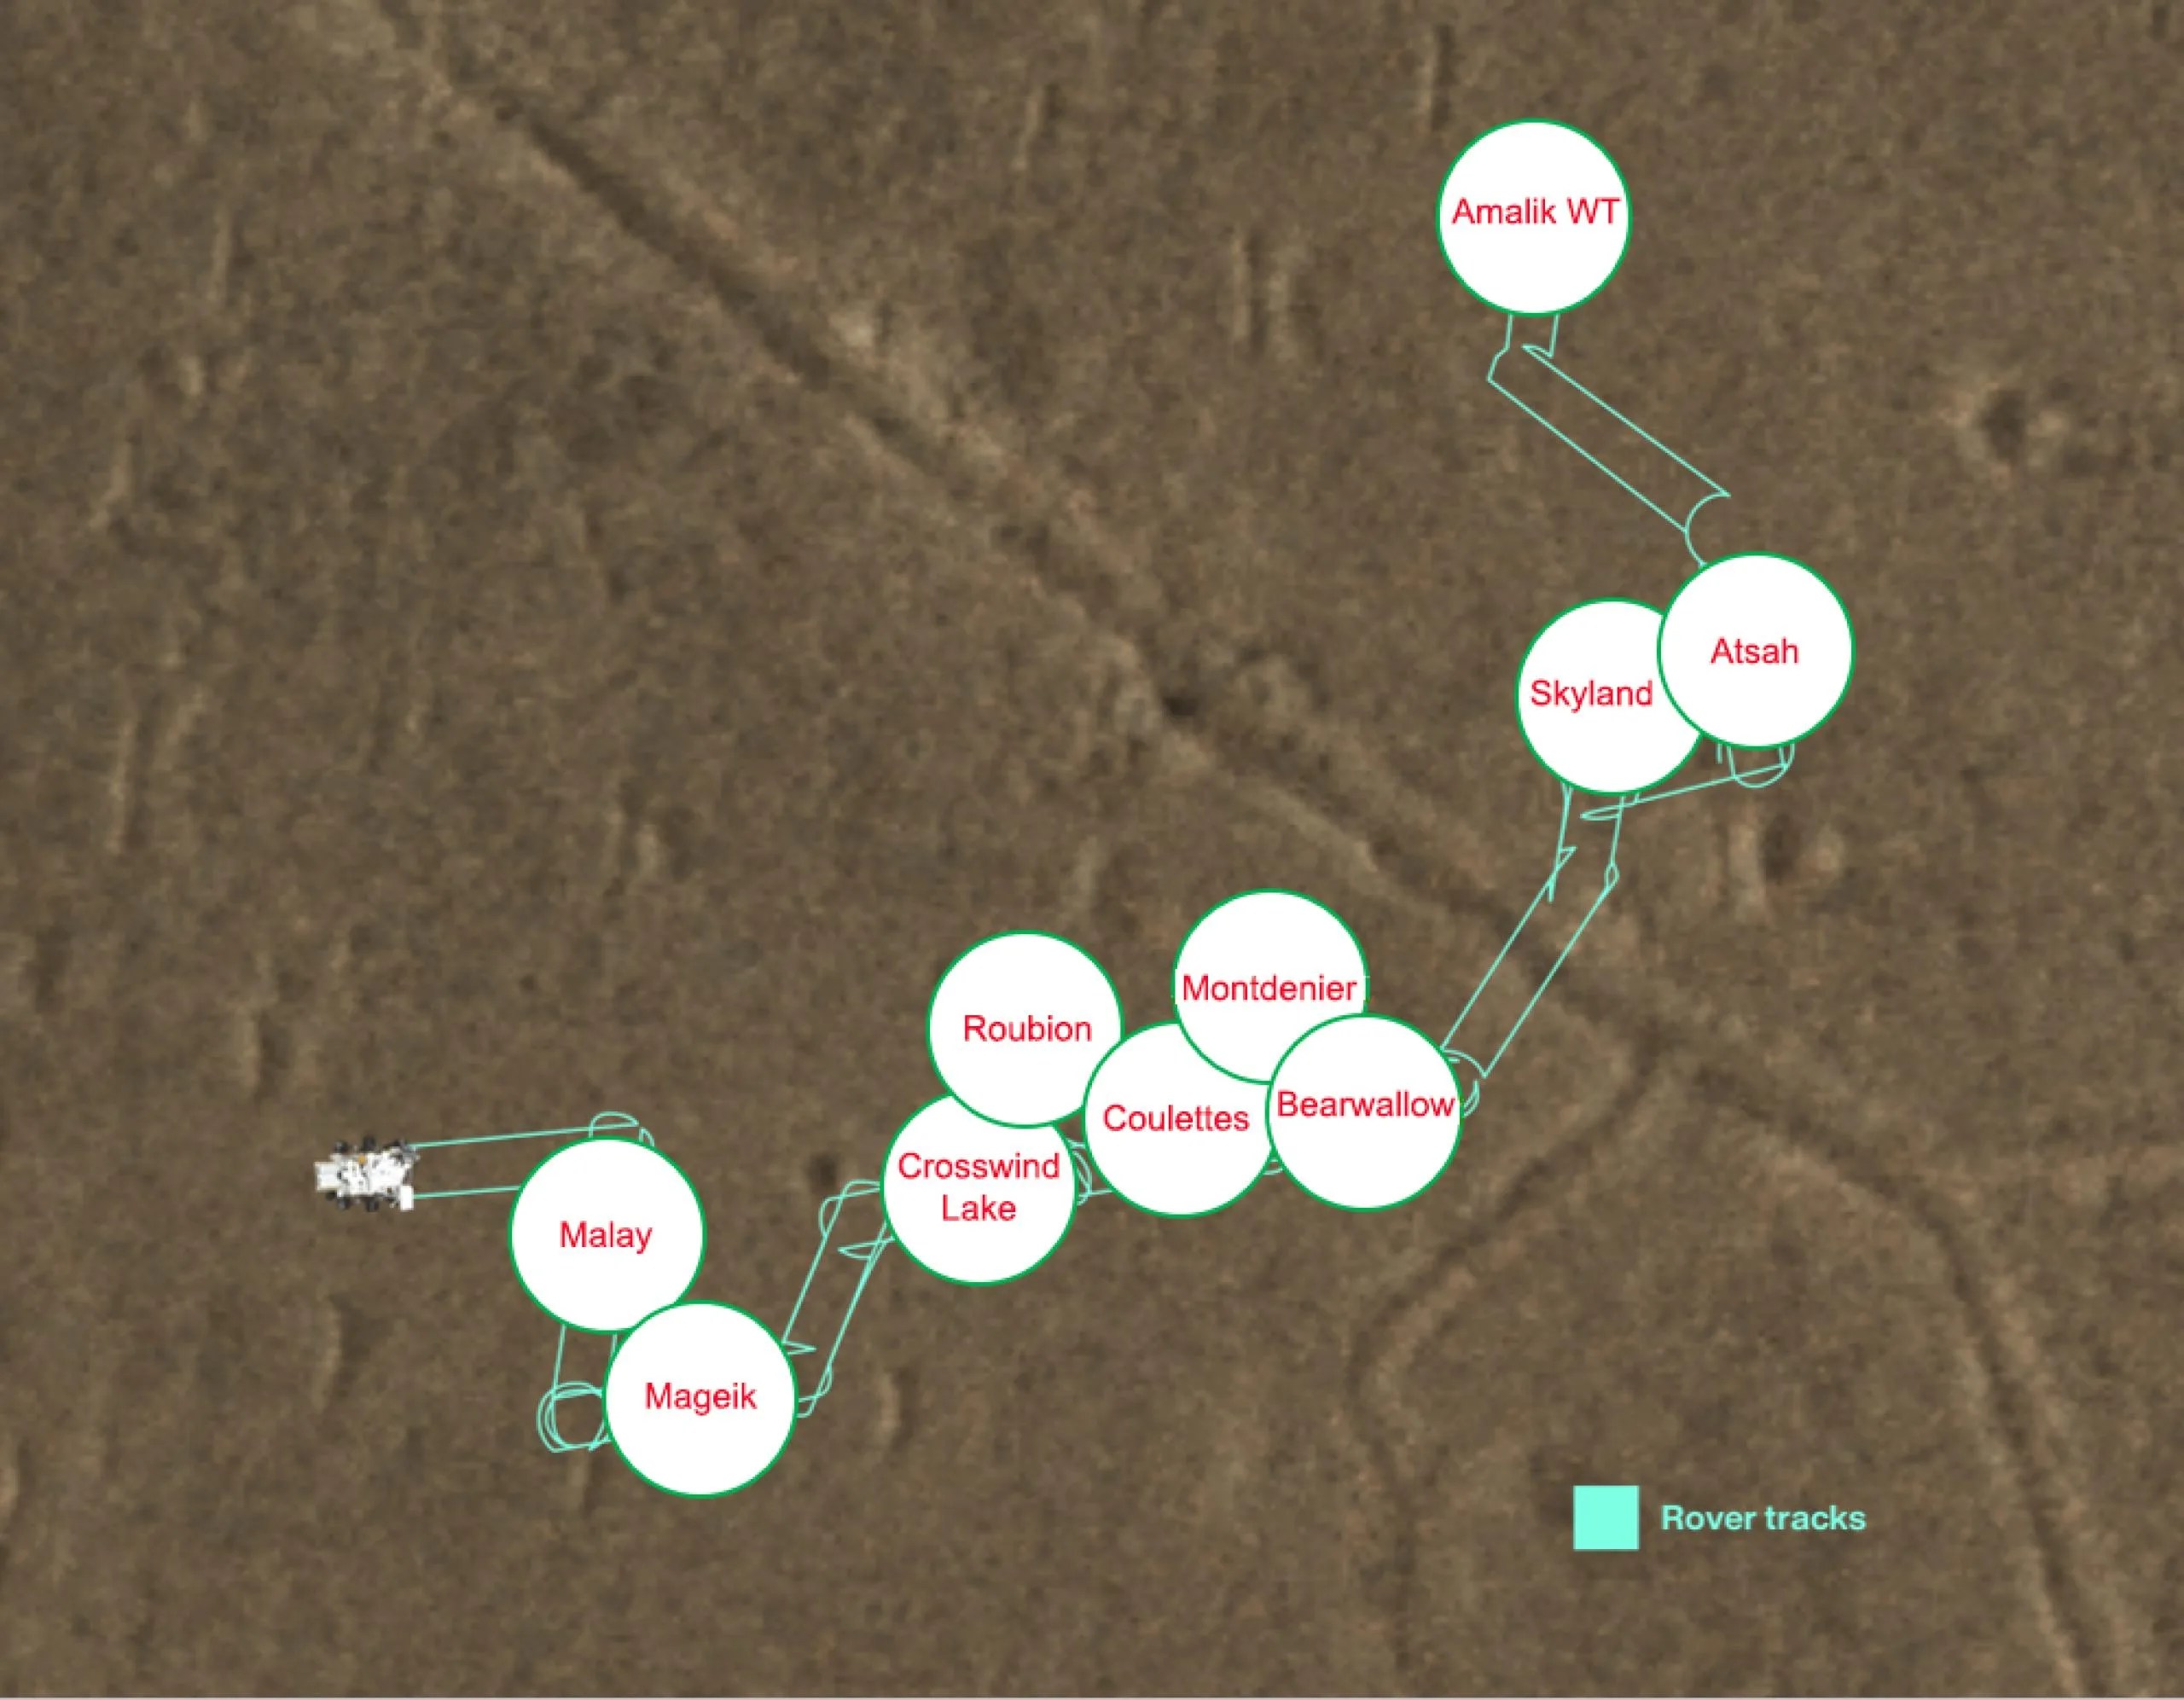 Este mapa muestra los lugares donde Perseverance, el vehículo explorador de la NASA en Marte, dejó caer 10 muestras para que una misión futura pueda recogerlas. Las líneas verde claro marcan las huellas del rover.